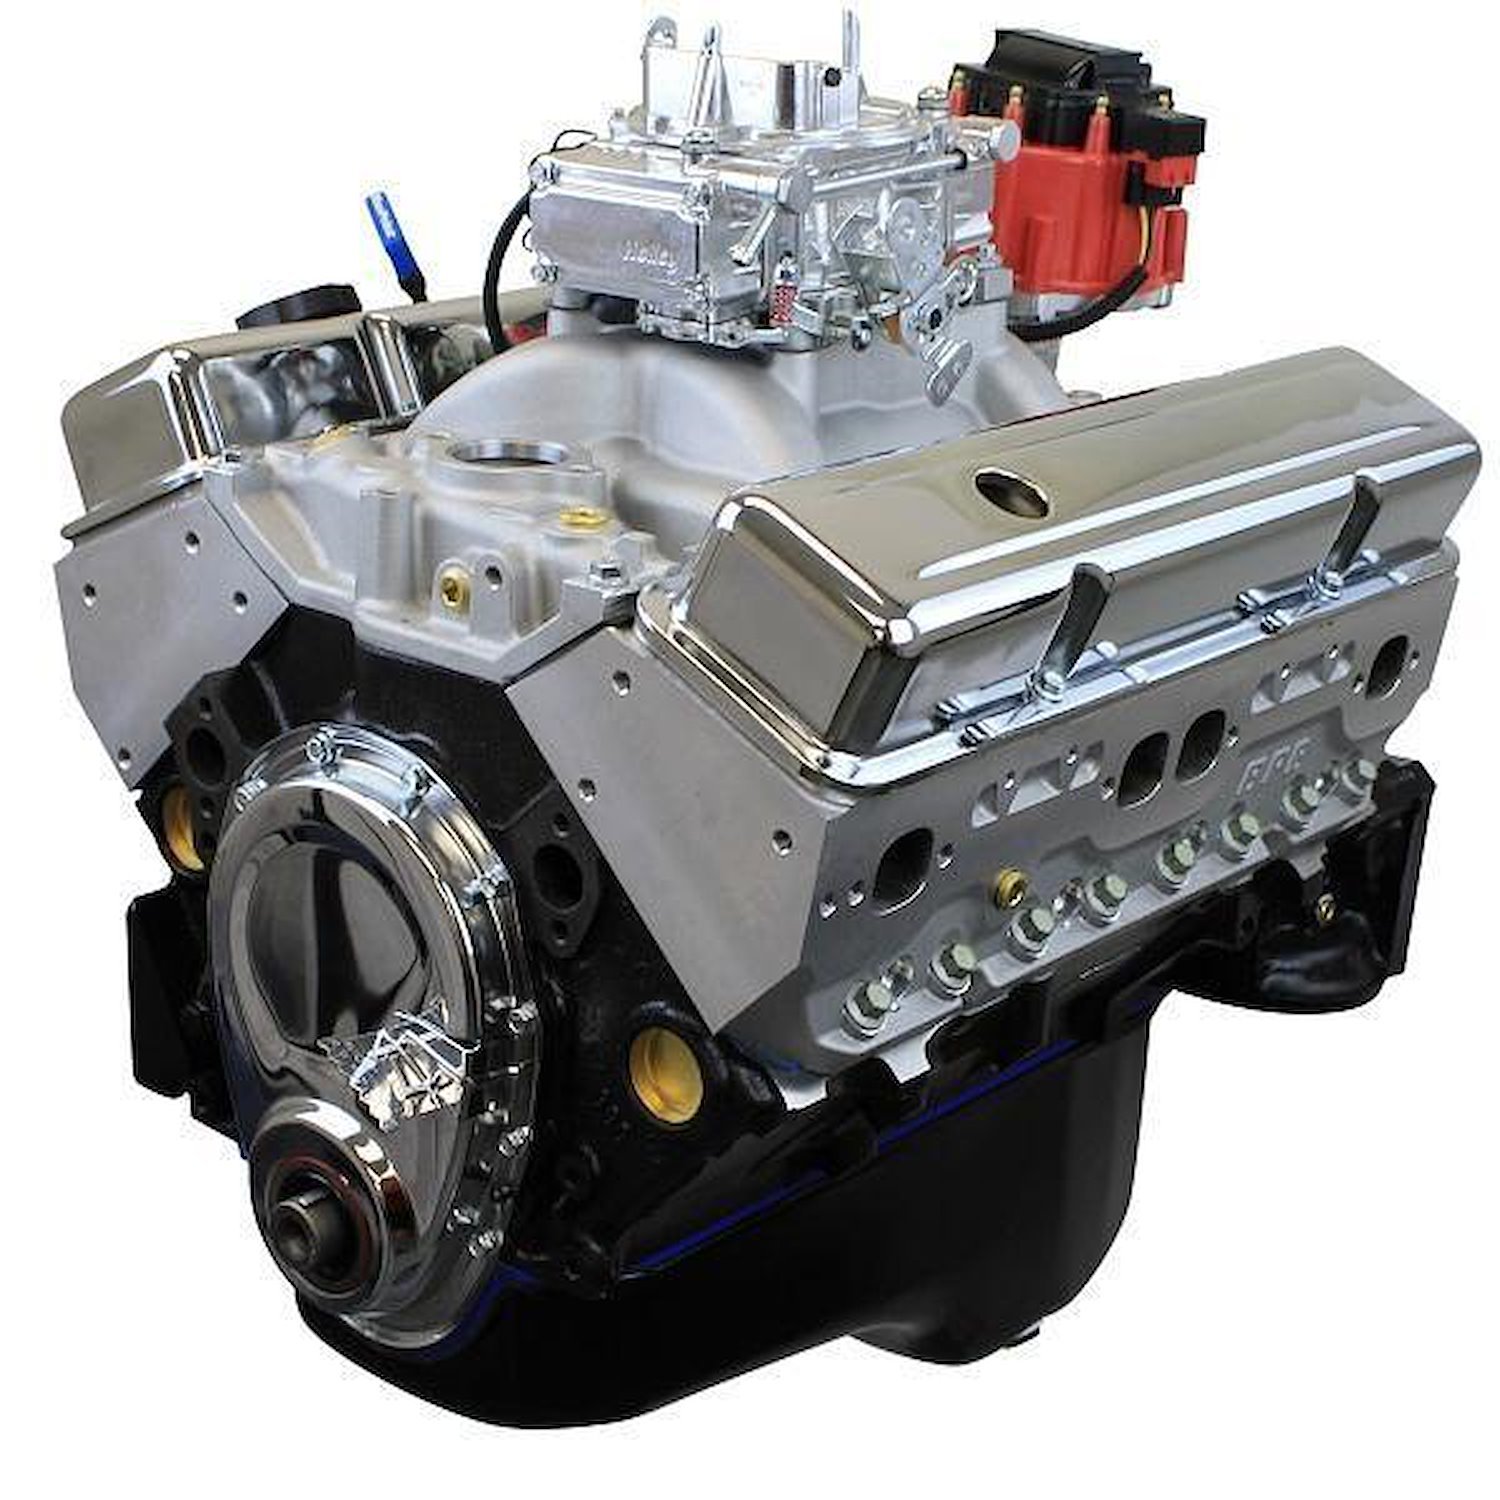 New Block Casting 350 ci Cruiser Crate Engine [Carbureted]